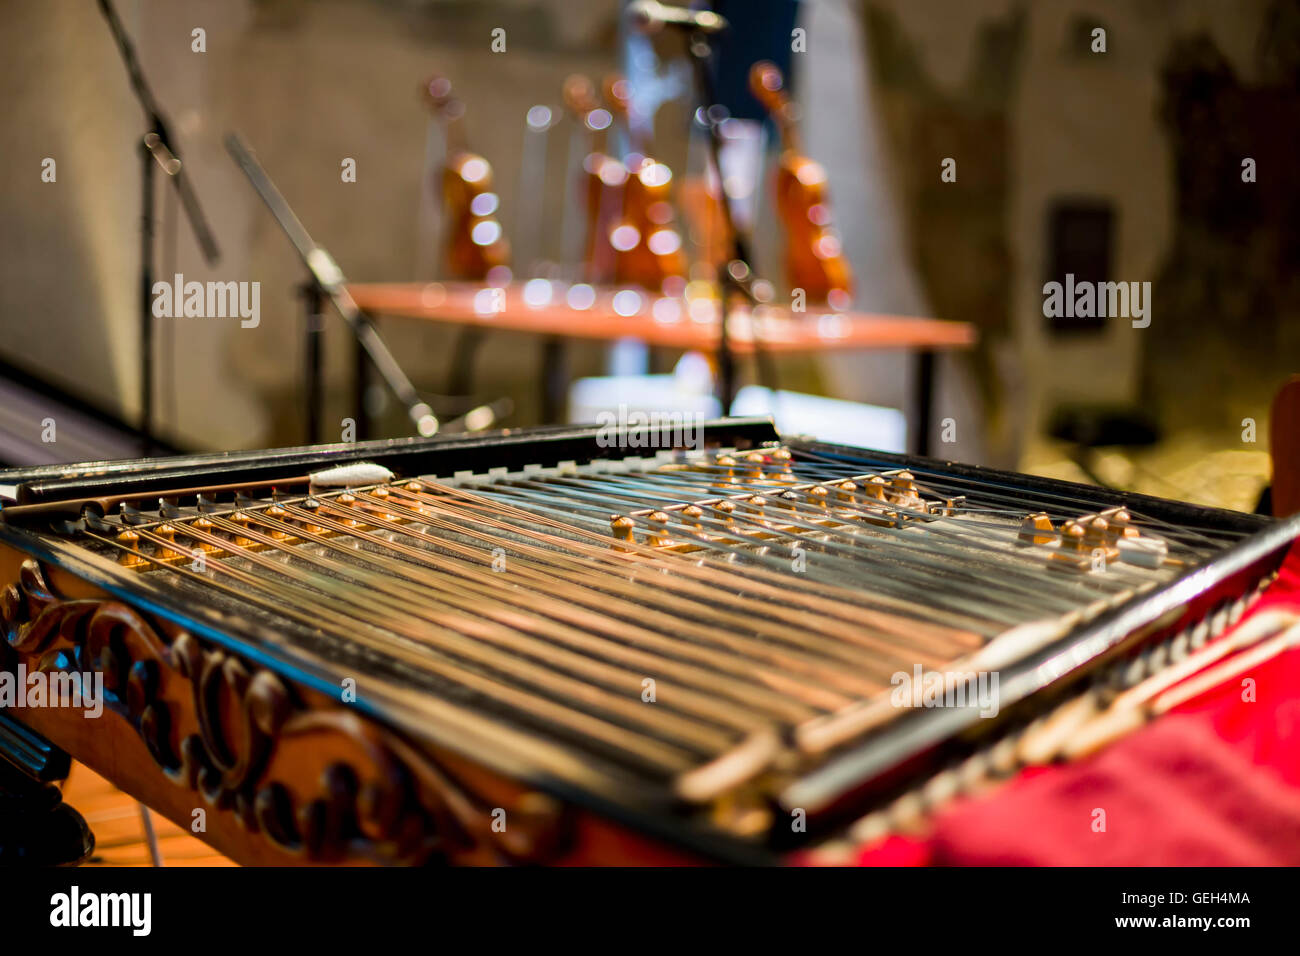 Wooden czech dulcimer traditional musical instrument. Stock Photo